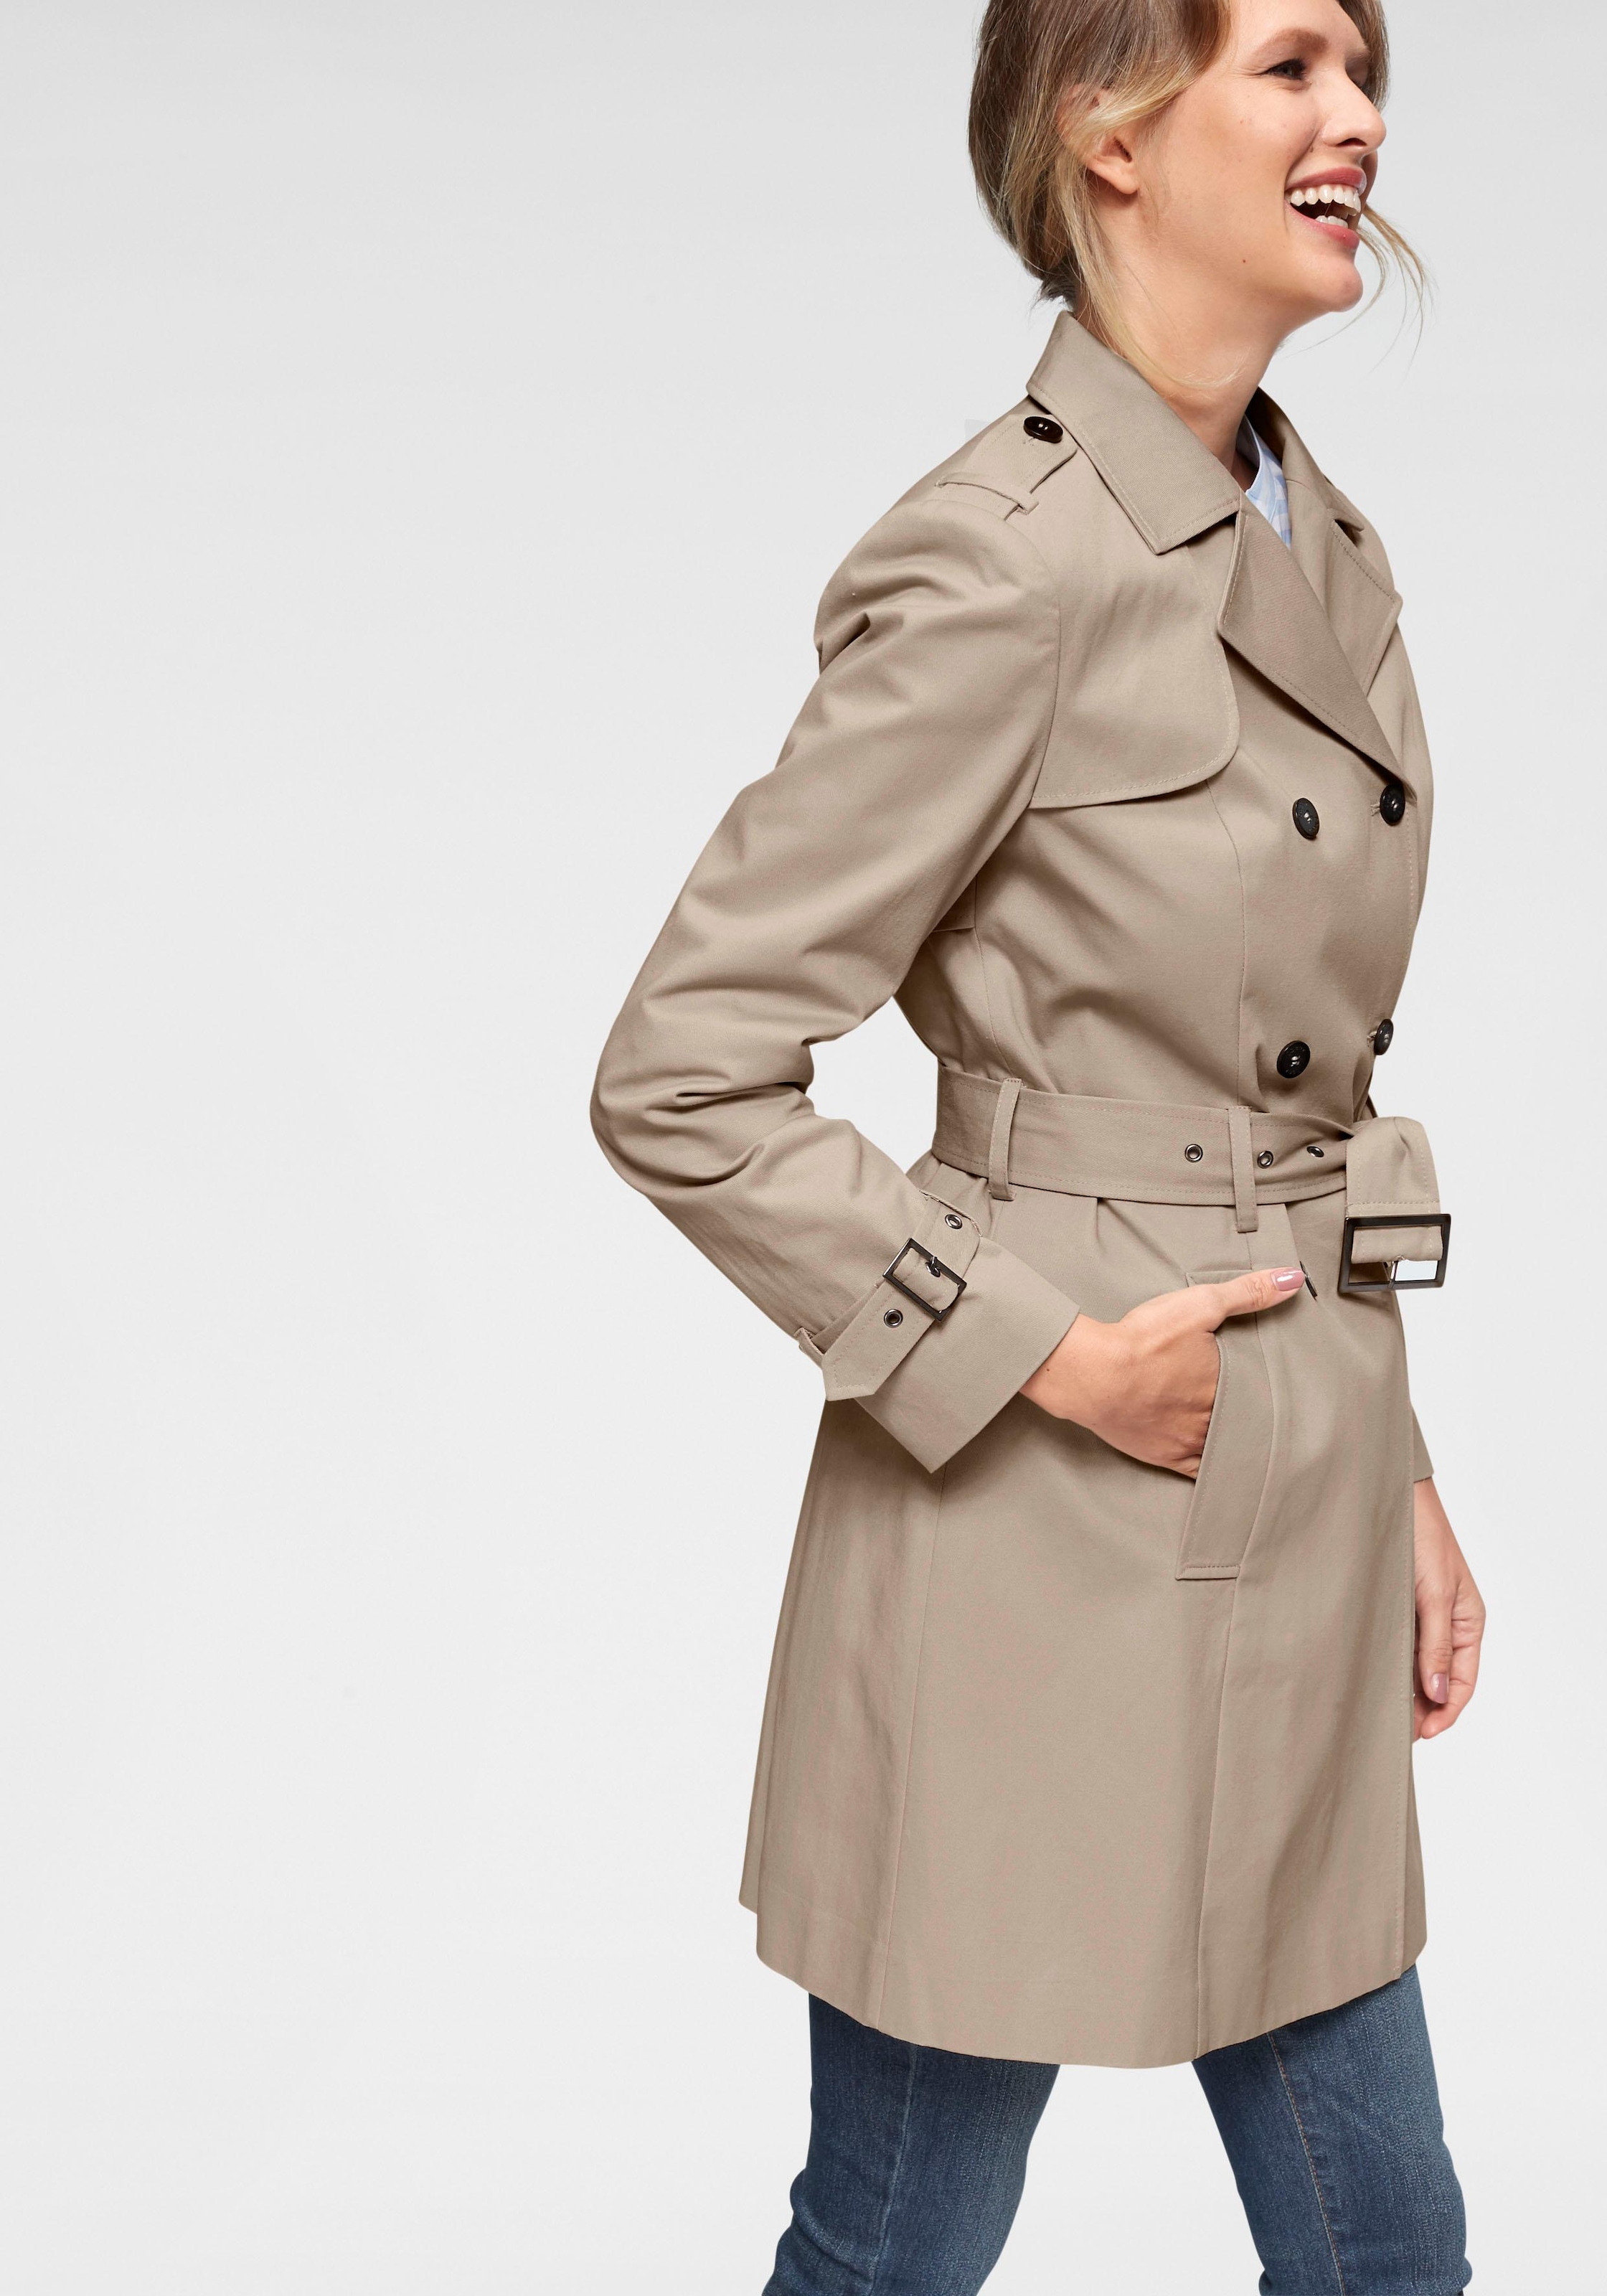 Mantel für Damen online kaufen | Stilvolle Damenmäntel Quelle bei